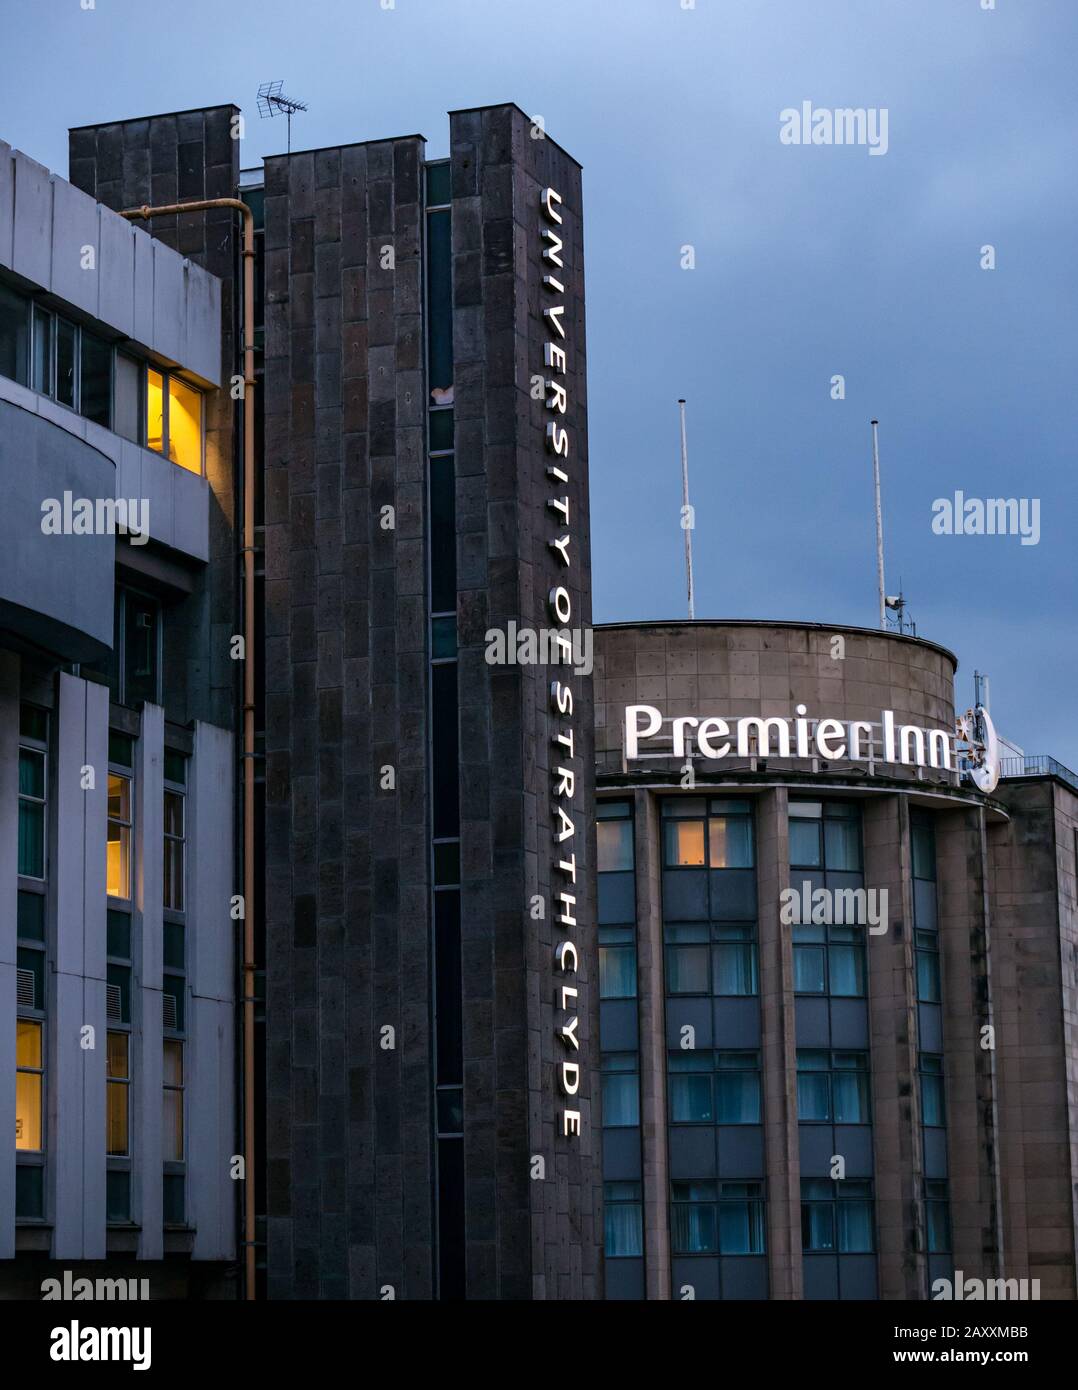 Premier Inn & Strathclyde University lit neon name sign at dusk, George Street, Glasgow, Scotland, UK Stock Photo